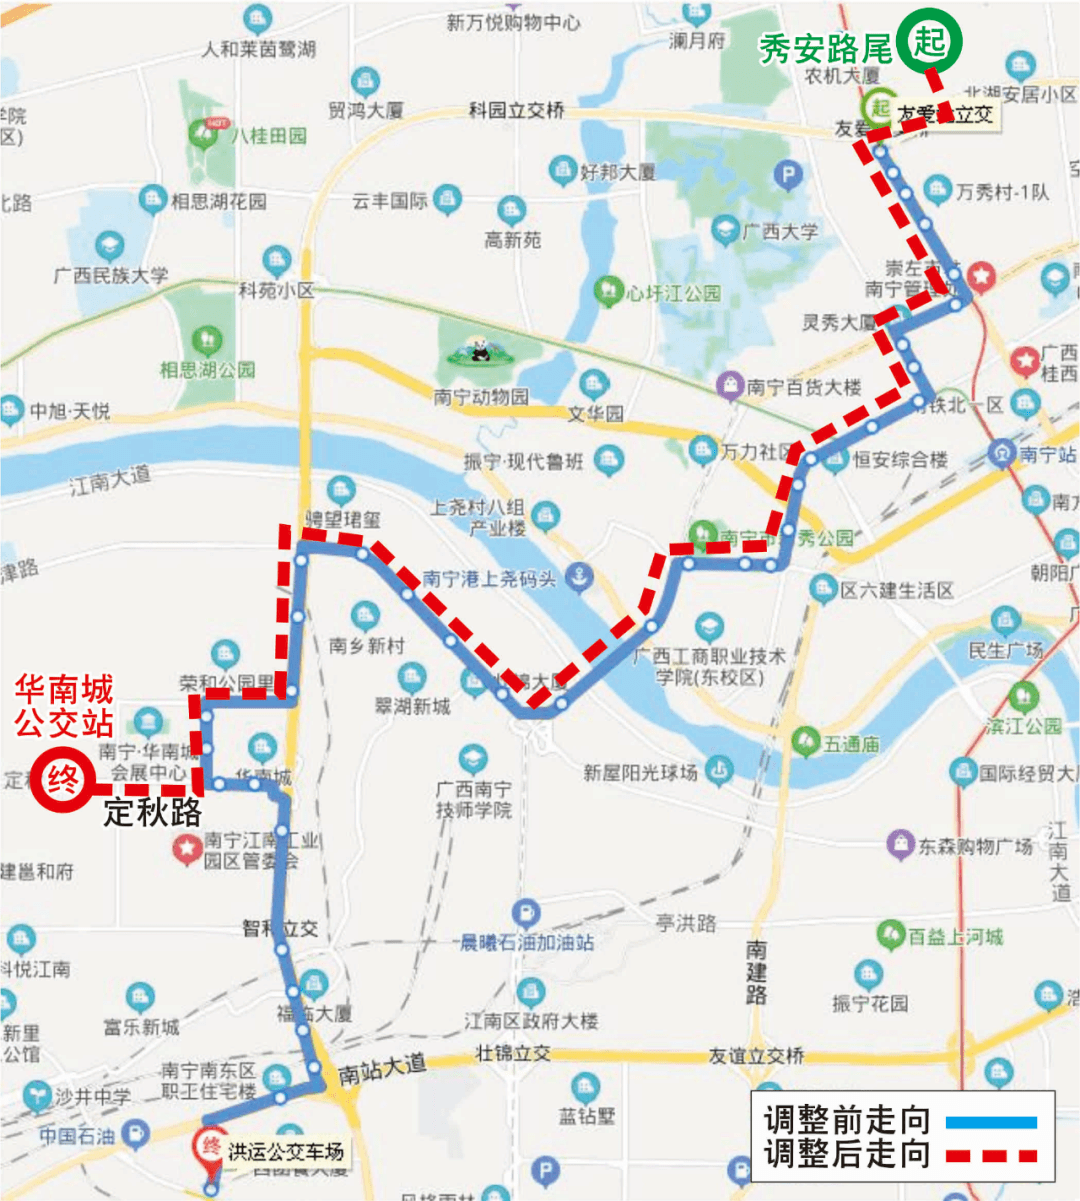 61路公交车的线路图图片